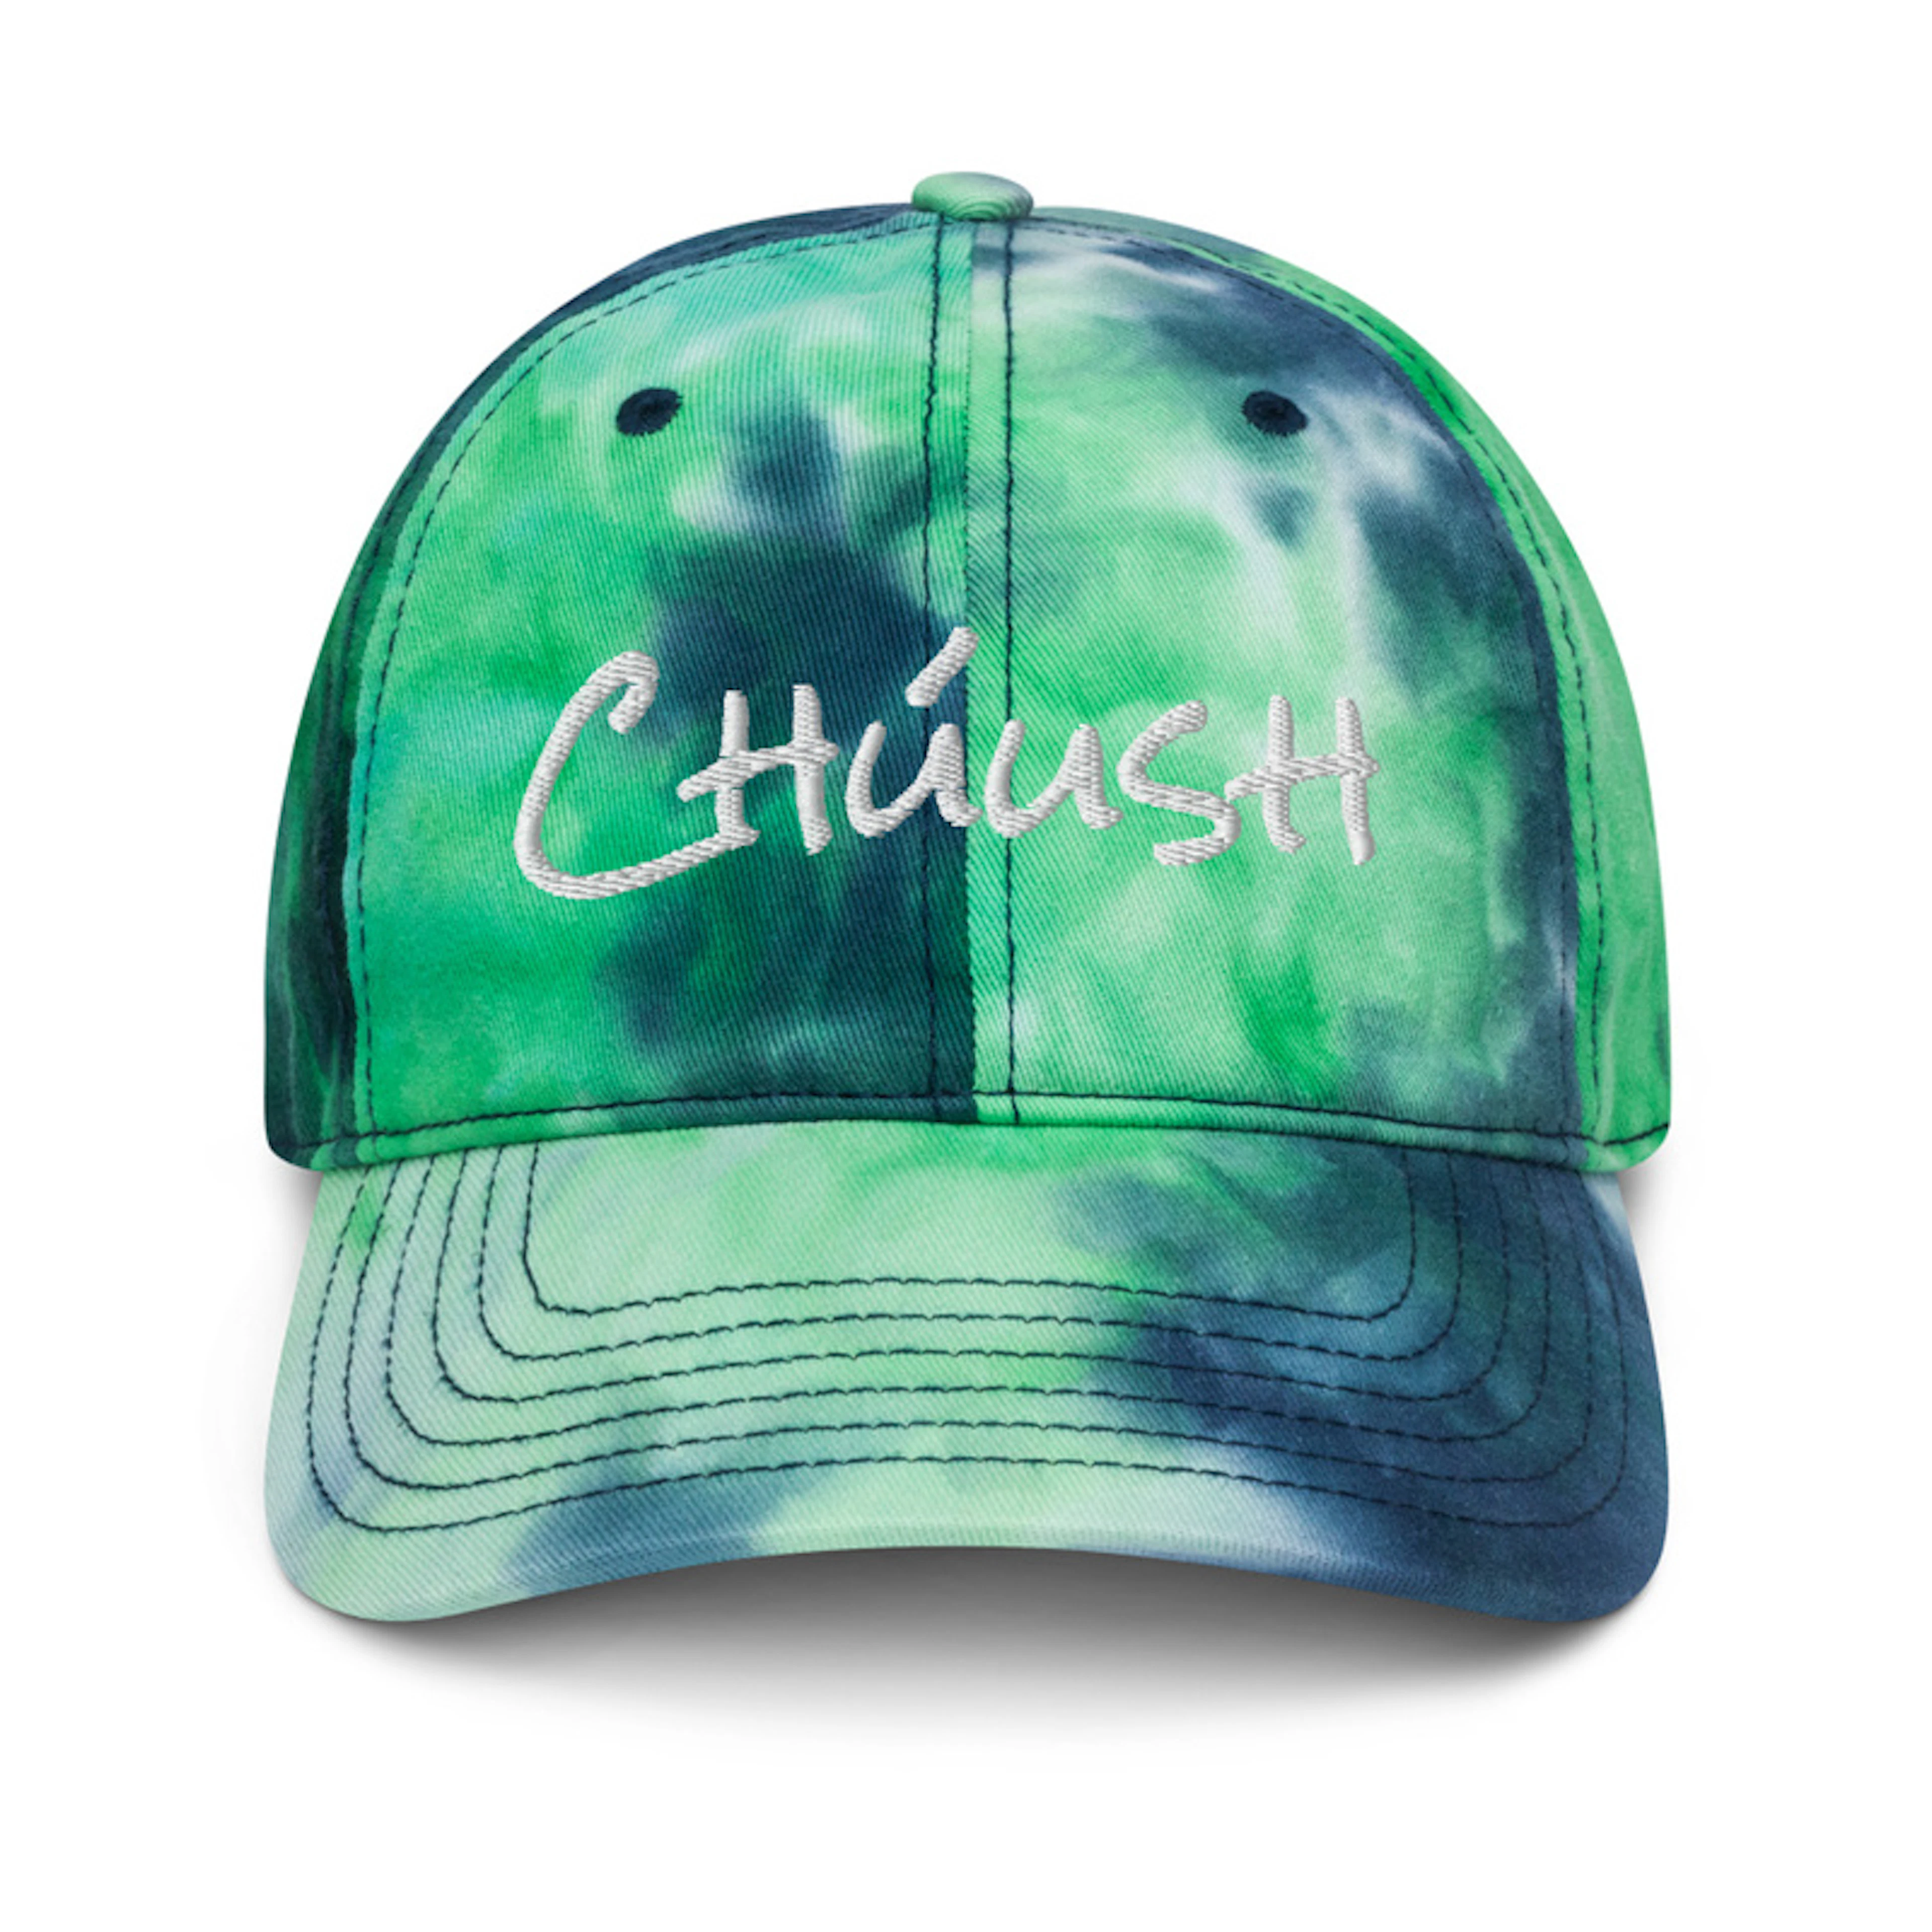 Chúush Retro Tie Dye Hat (Green/Blue)